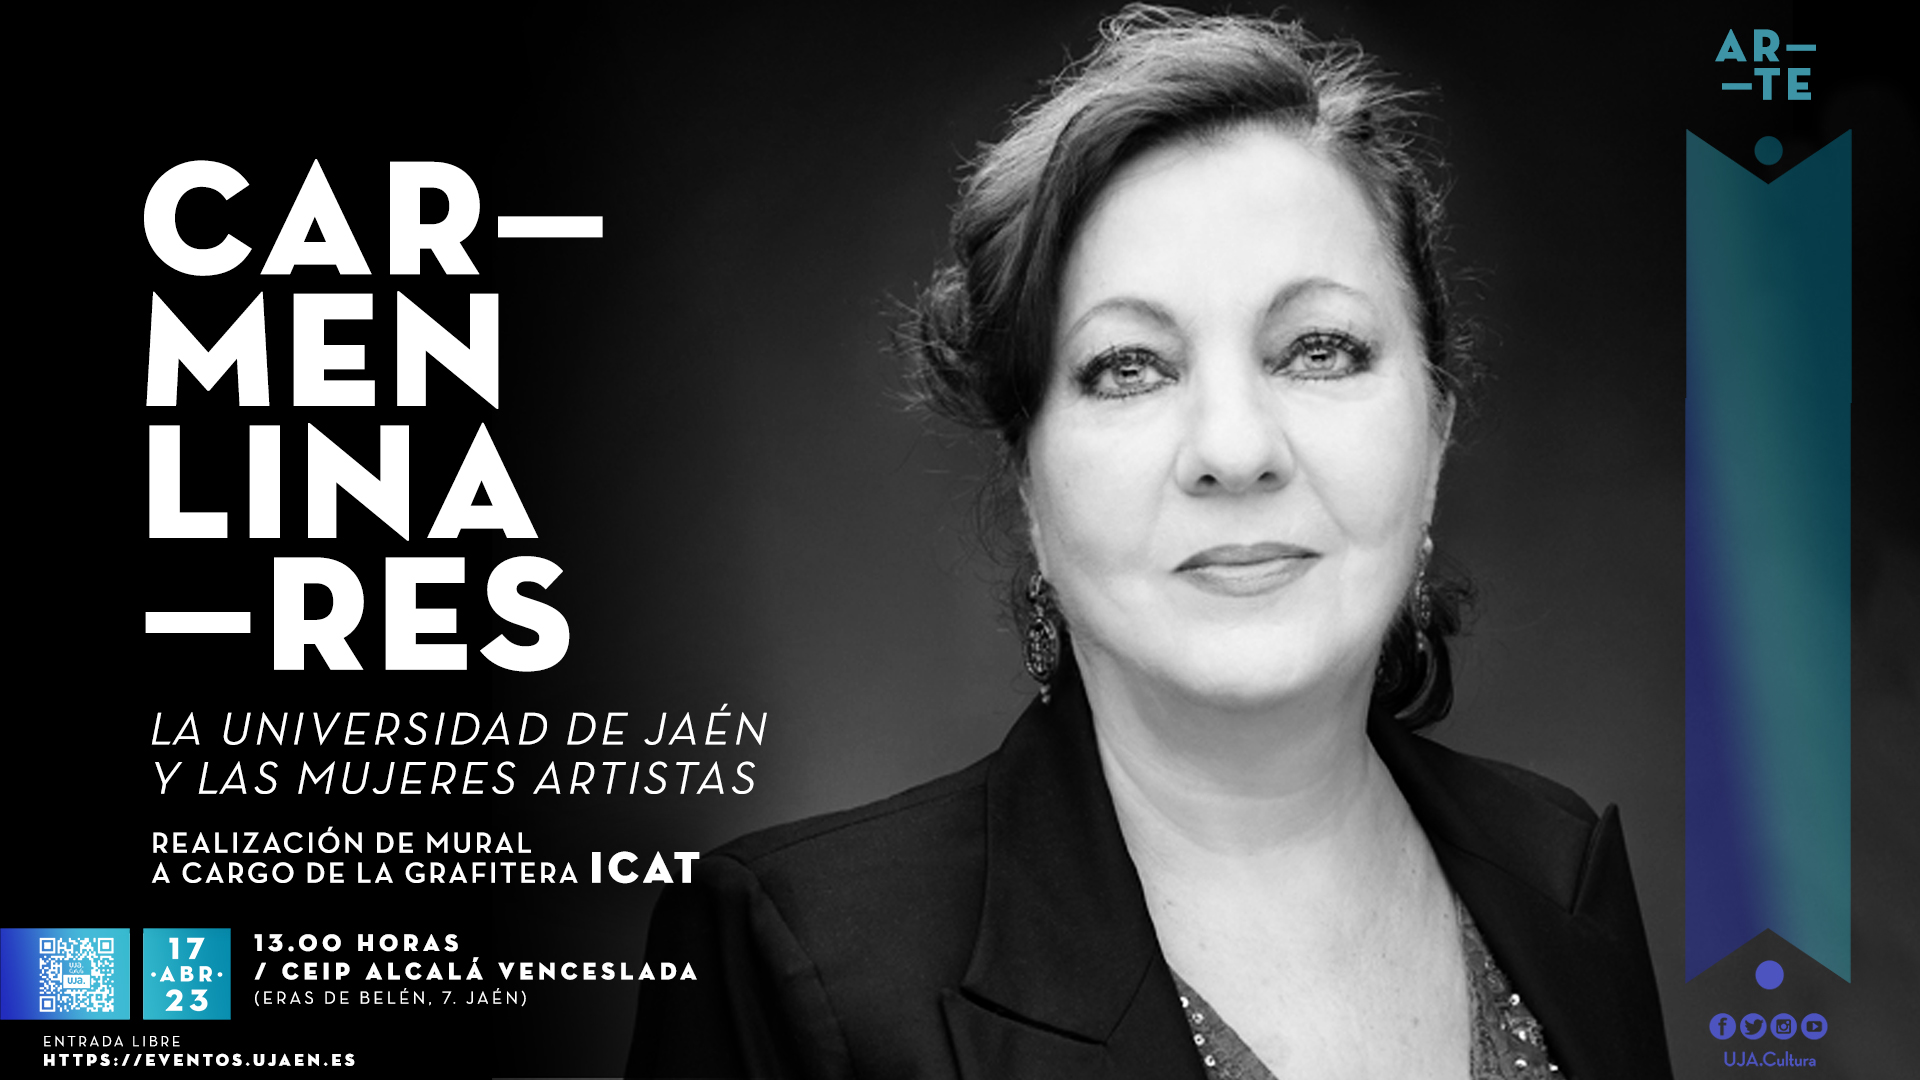 La Universidad de Jaén y las mujeres artistas. Carmen Linares